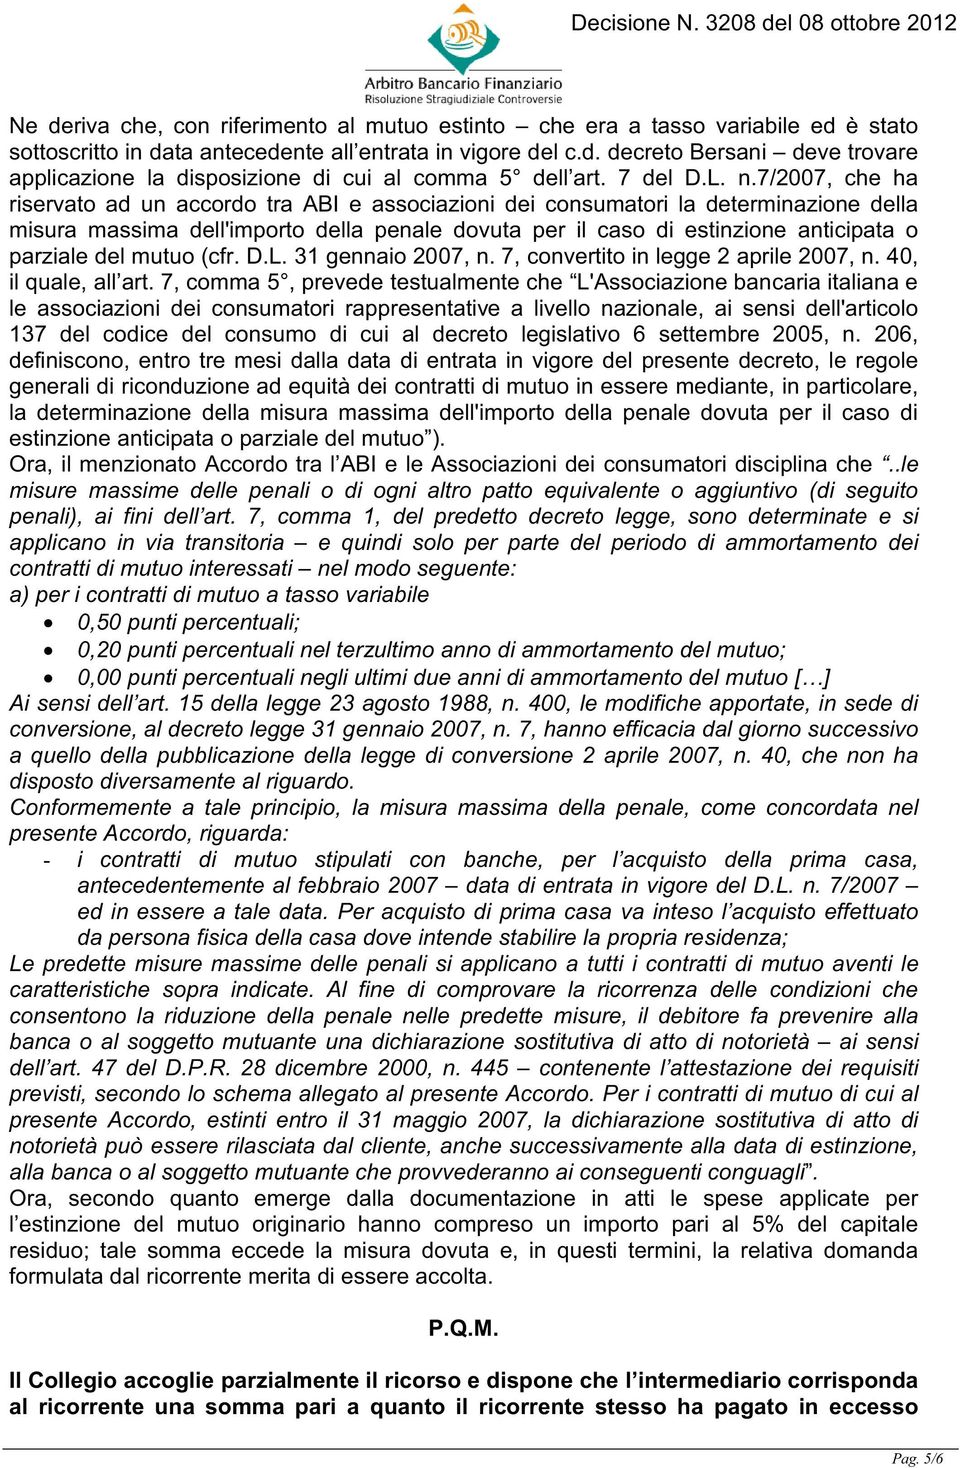 7/2007, che ha riservato ad un accordo tra ABI e associazioni dei consumatori la determinazione della misura massima dell'importo della penale dovuta per il caso di estinzione anticipata o parziale